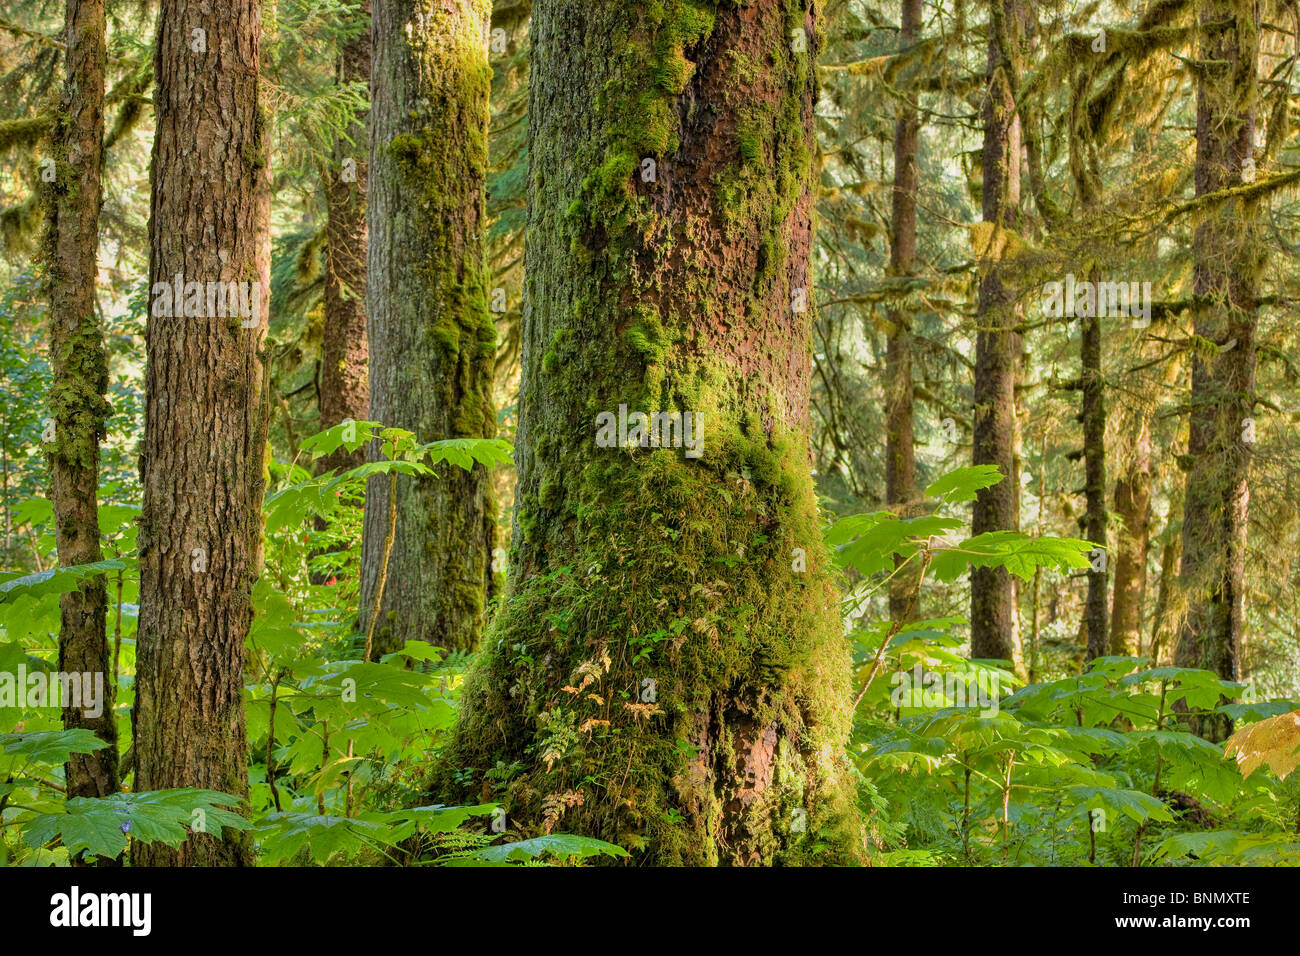 La mousse et les lichens s'accrochent aux troncs et branches de conifères anciennes dans la forêt nationale de Tongass en Alaska, Alaska Banque D'Images